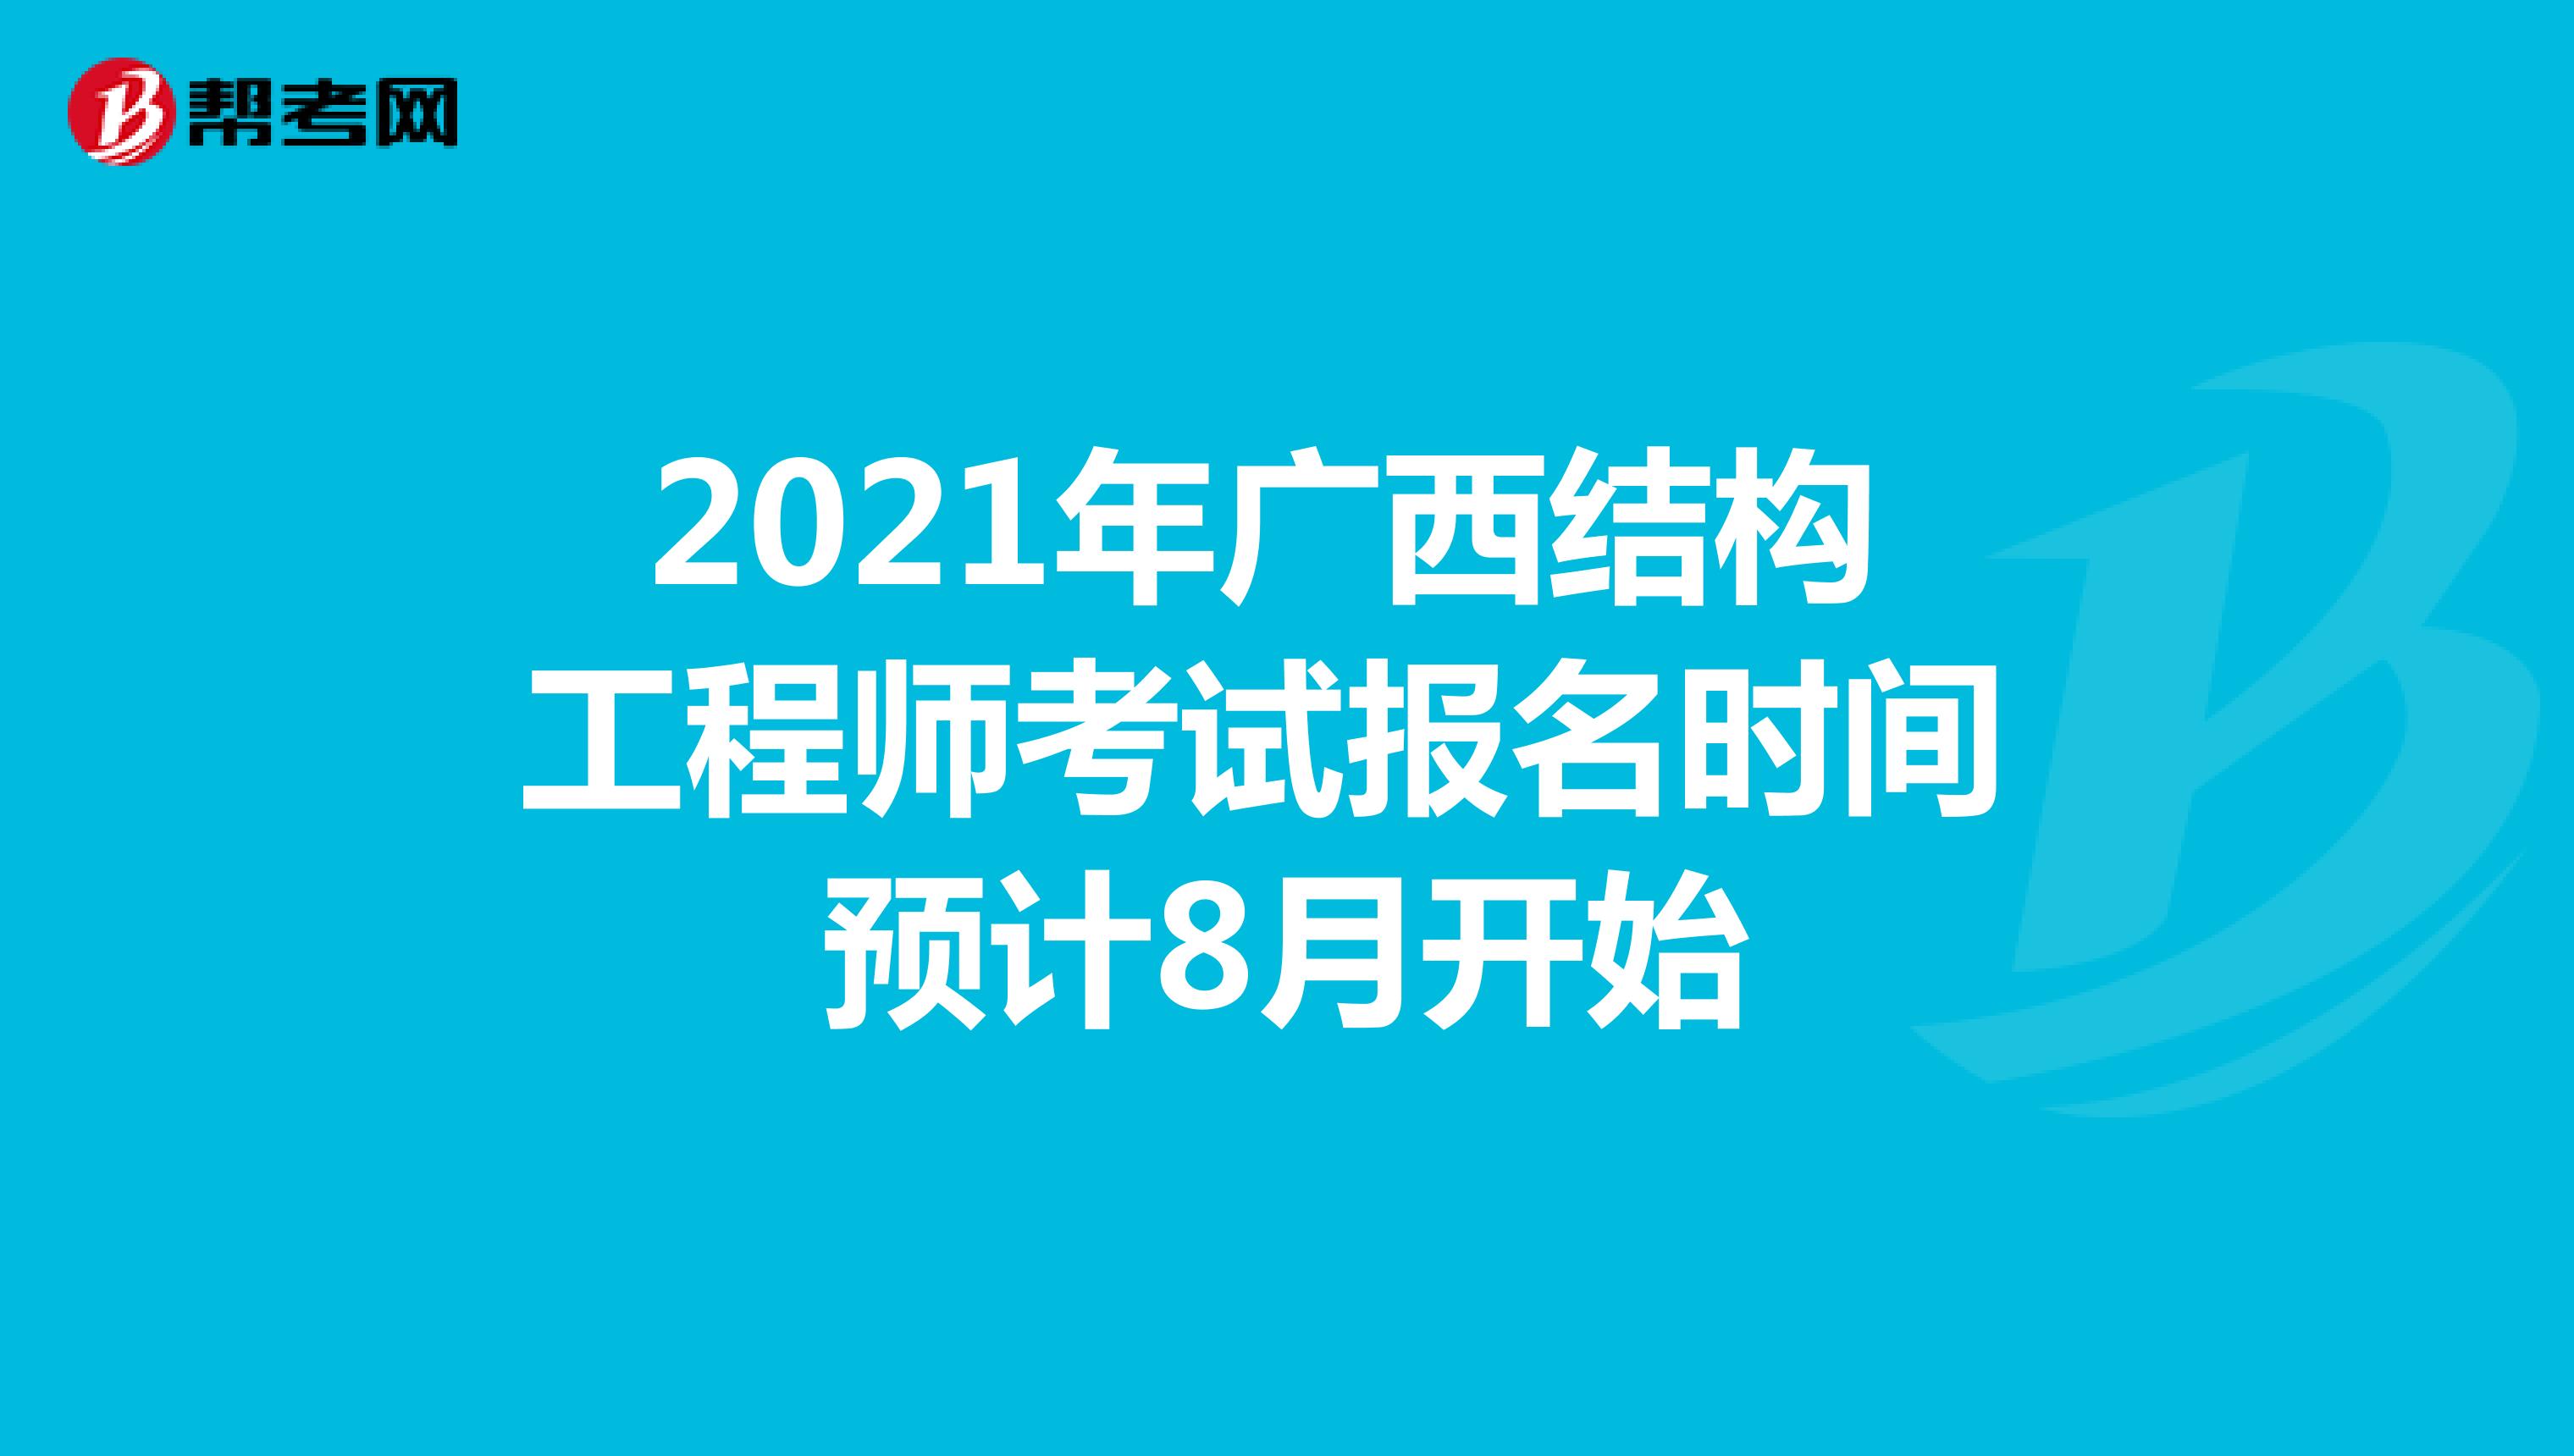 2021年广西结构工程师考试报名时间预计8月开始